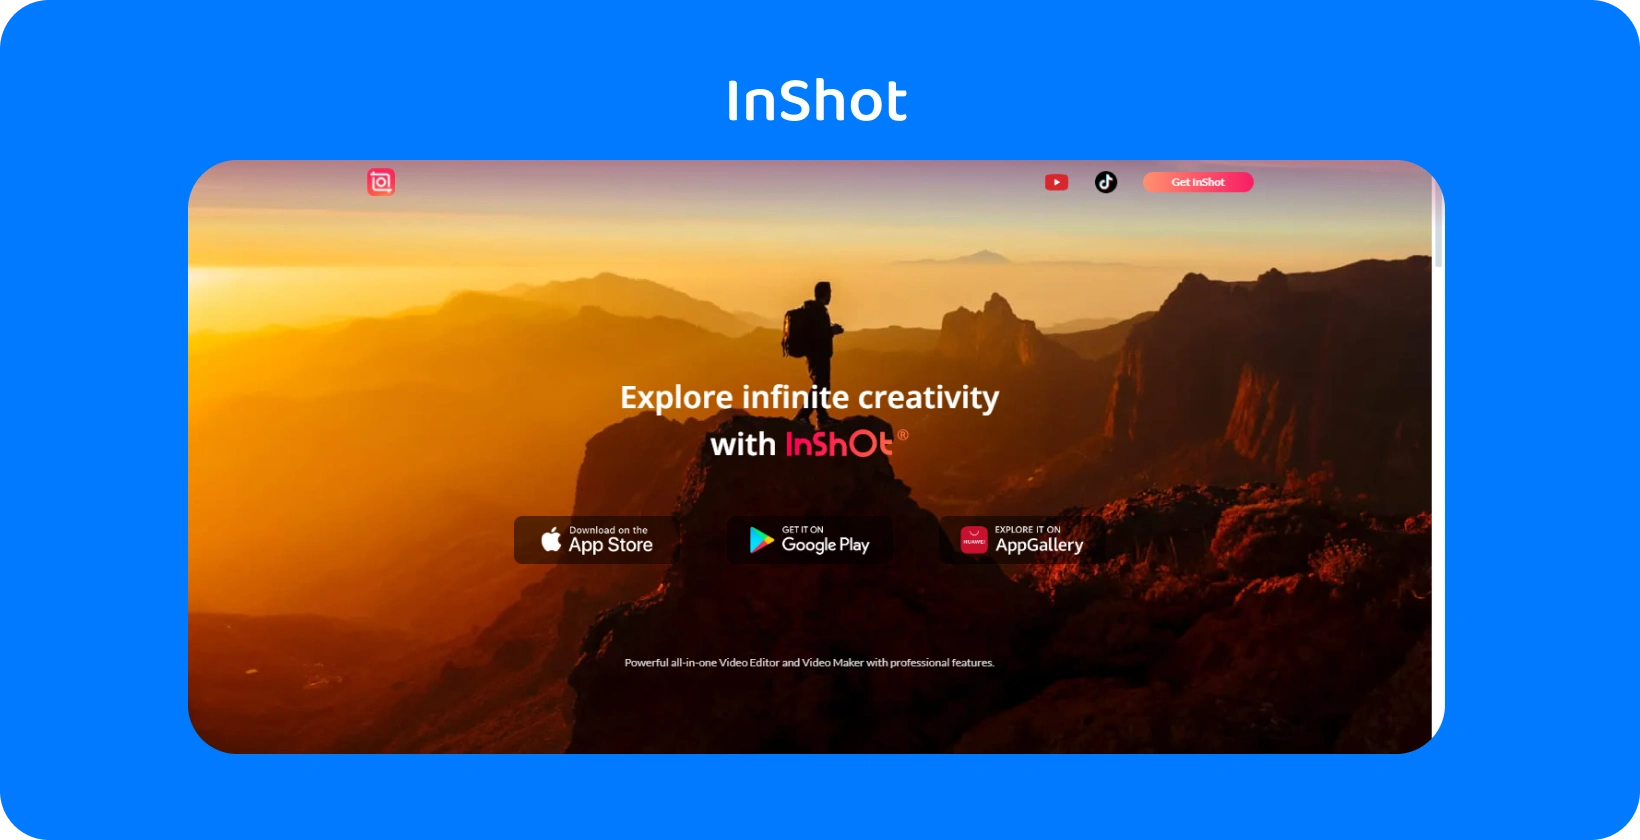 InShot uygulamanın gün batımında bir yürüyüşçünün yer aldığı reklamı, uygulamanın video düzenlemede sonsuz yaratıcılığı keşfetme vaadini simgeliyor.
